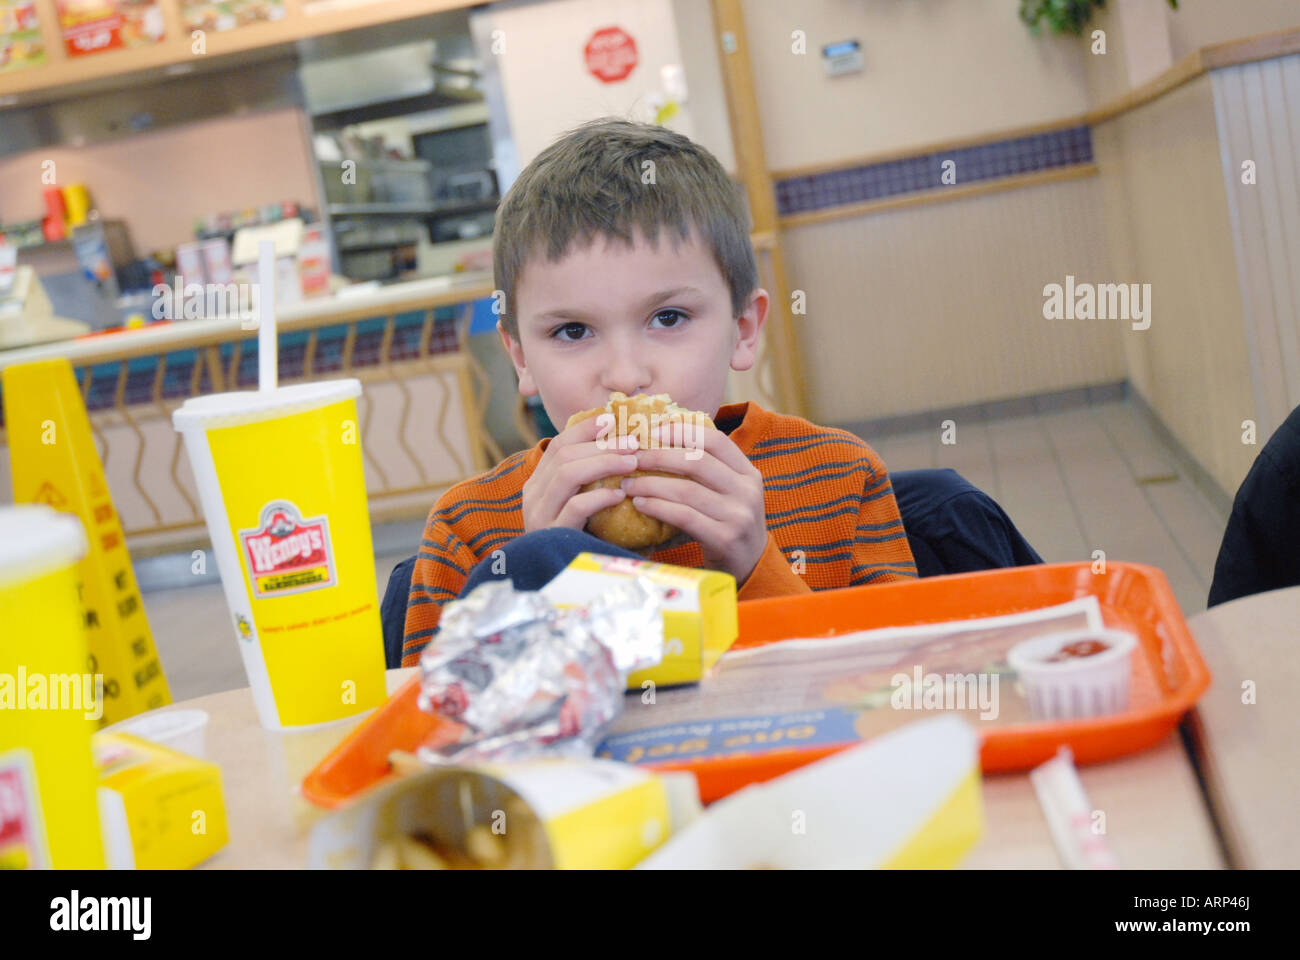 Sept (7) ans mange un déjeuner au fast food Wendy's avec sa famille, Massachusetts (MA), États-Unis d'Amérique (USA) Banque D'Images